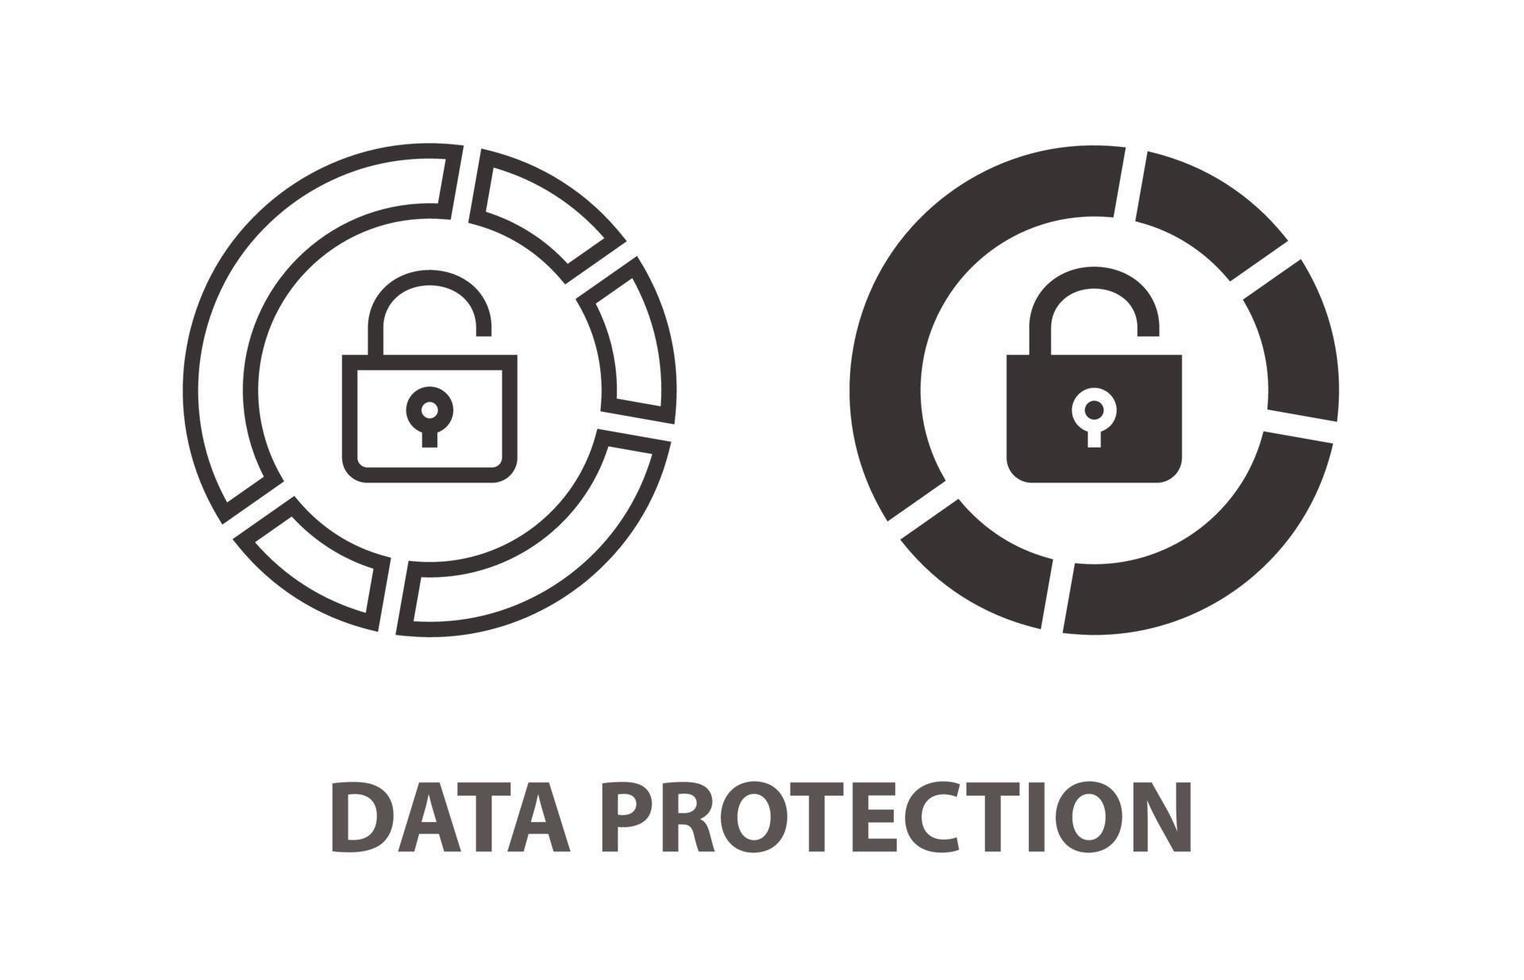 data skydd ikon på vit bakgrund. vektor illustration.